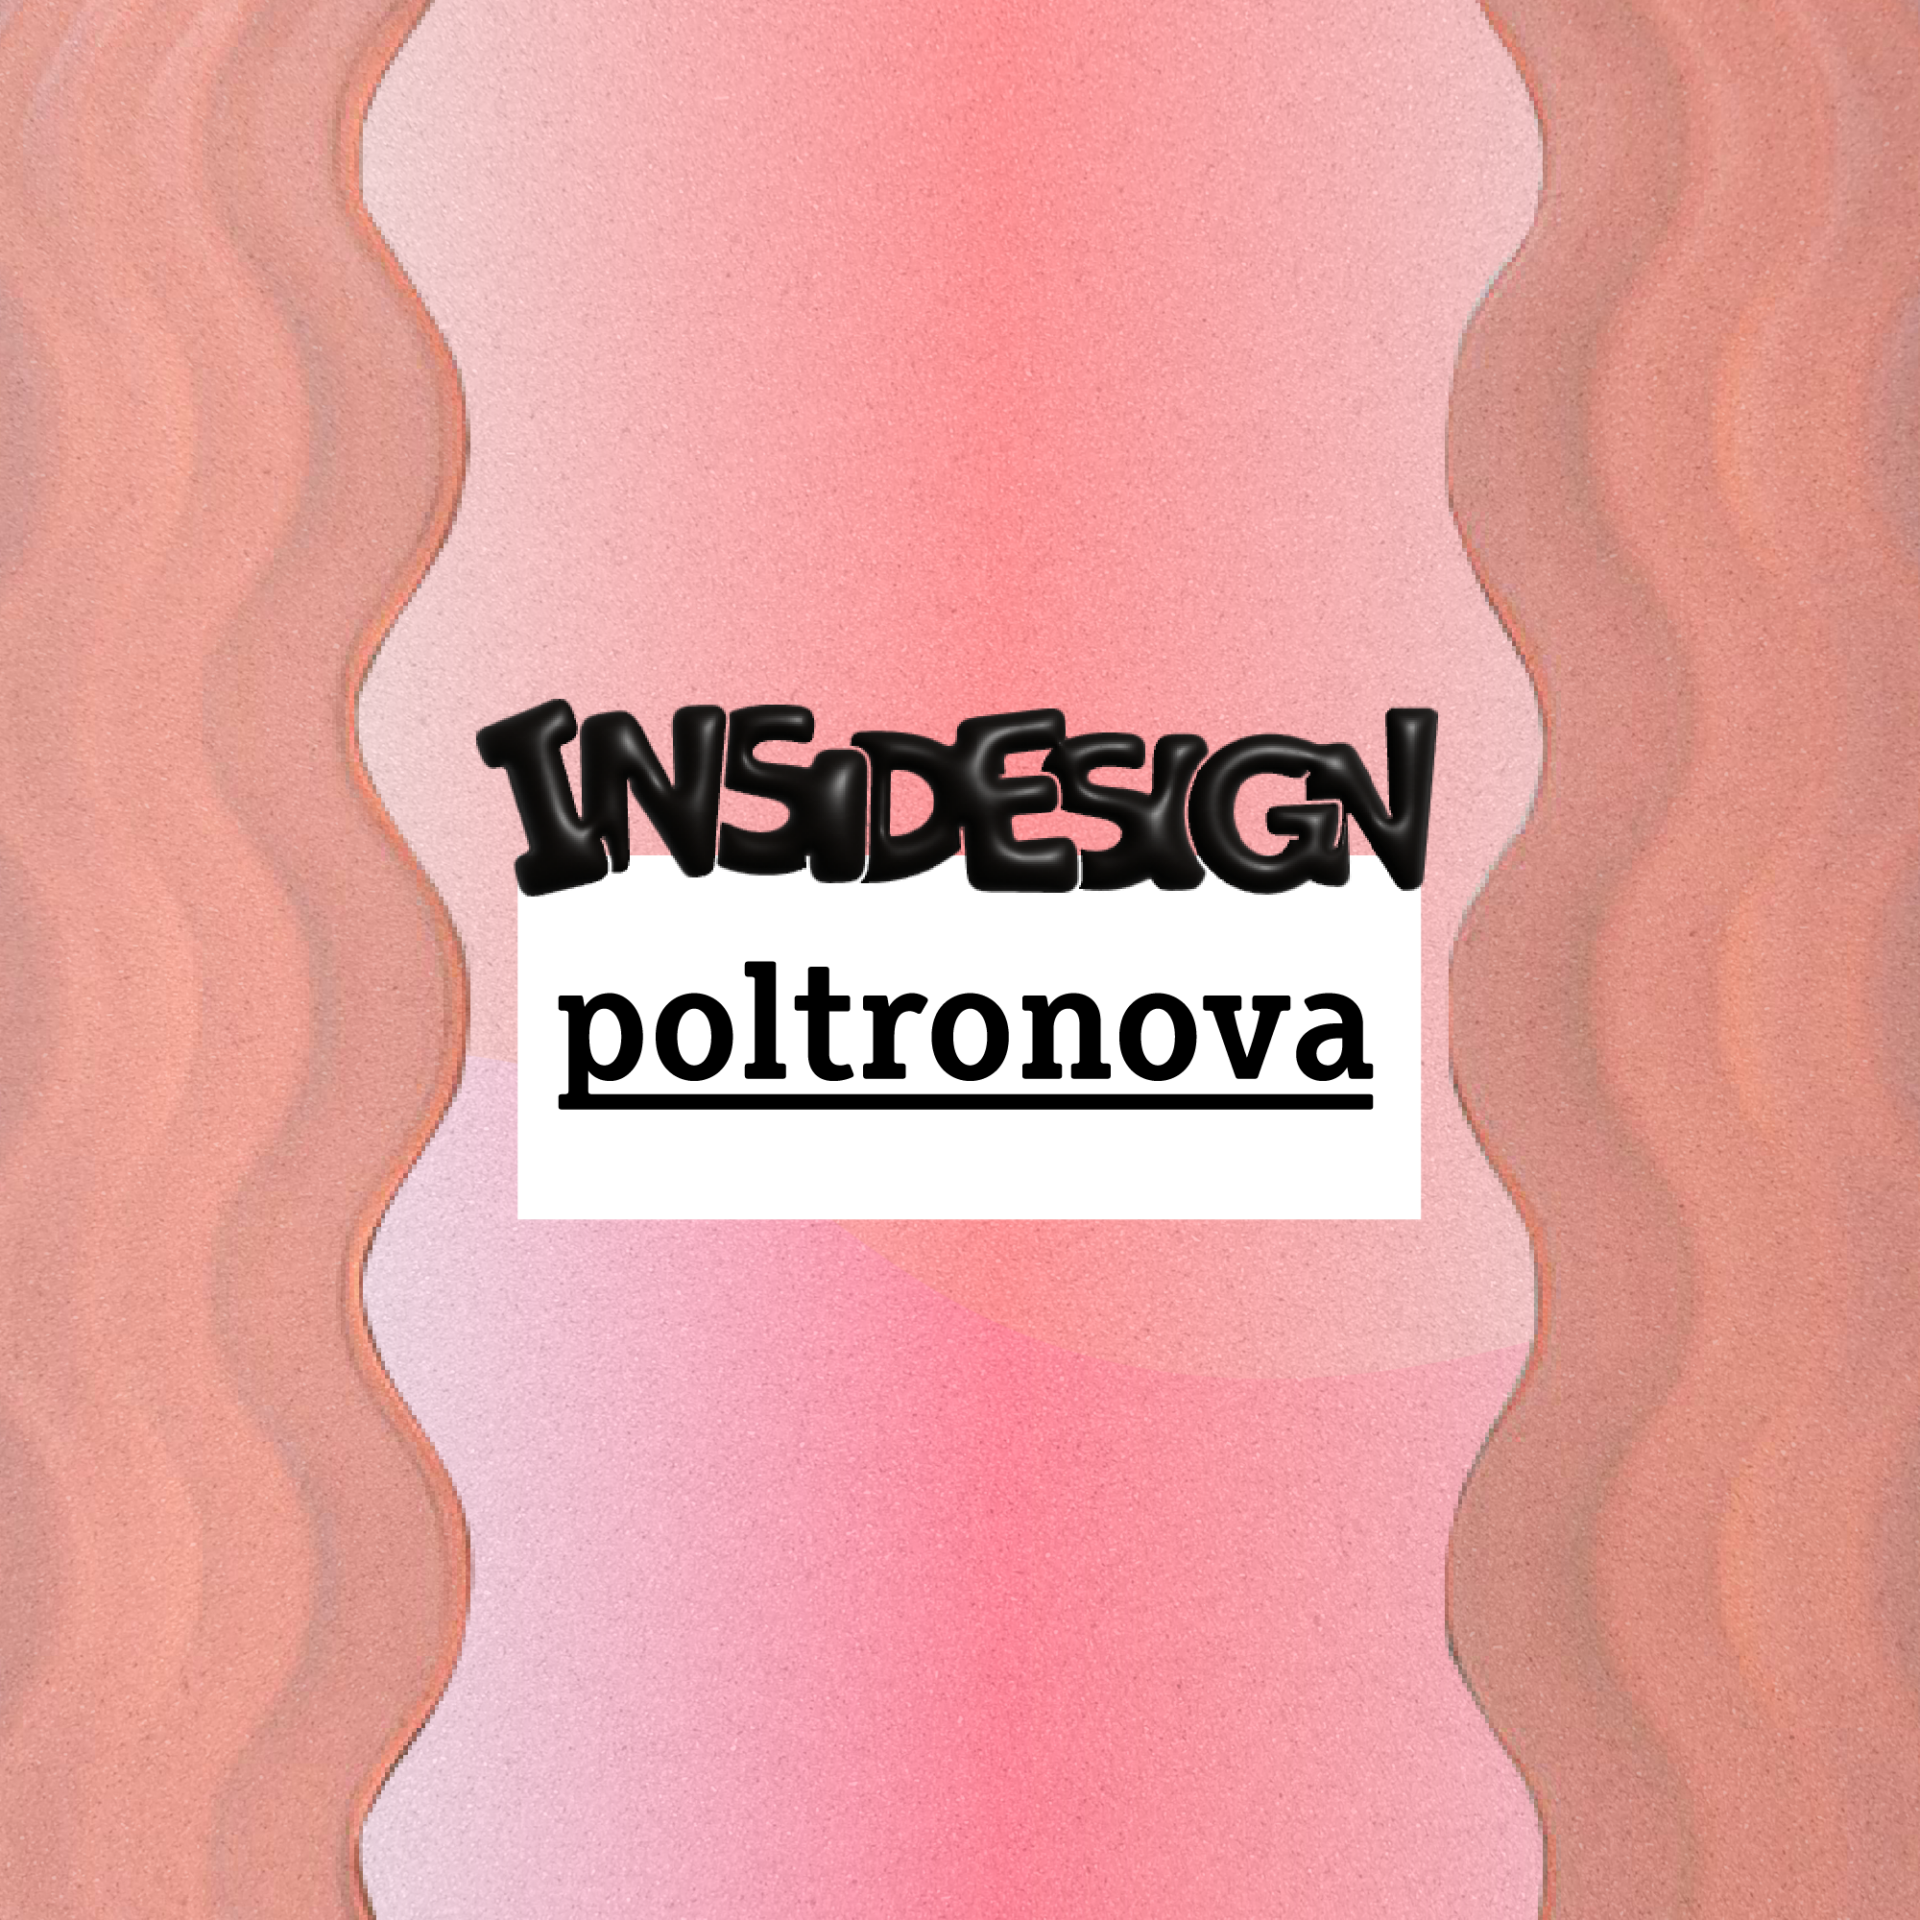 INSIDESIGN Poltronova Ultrafragola Ettore Sottsass Jr.